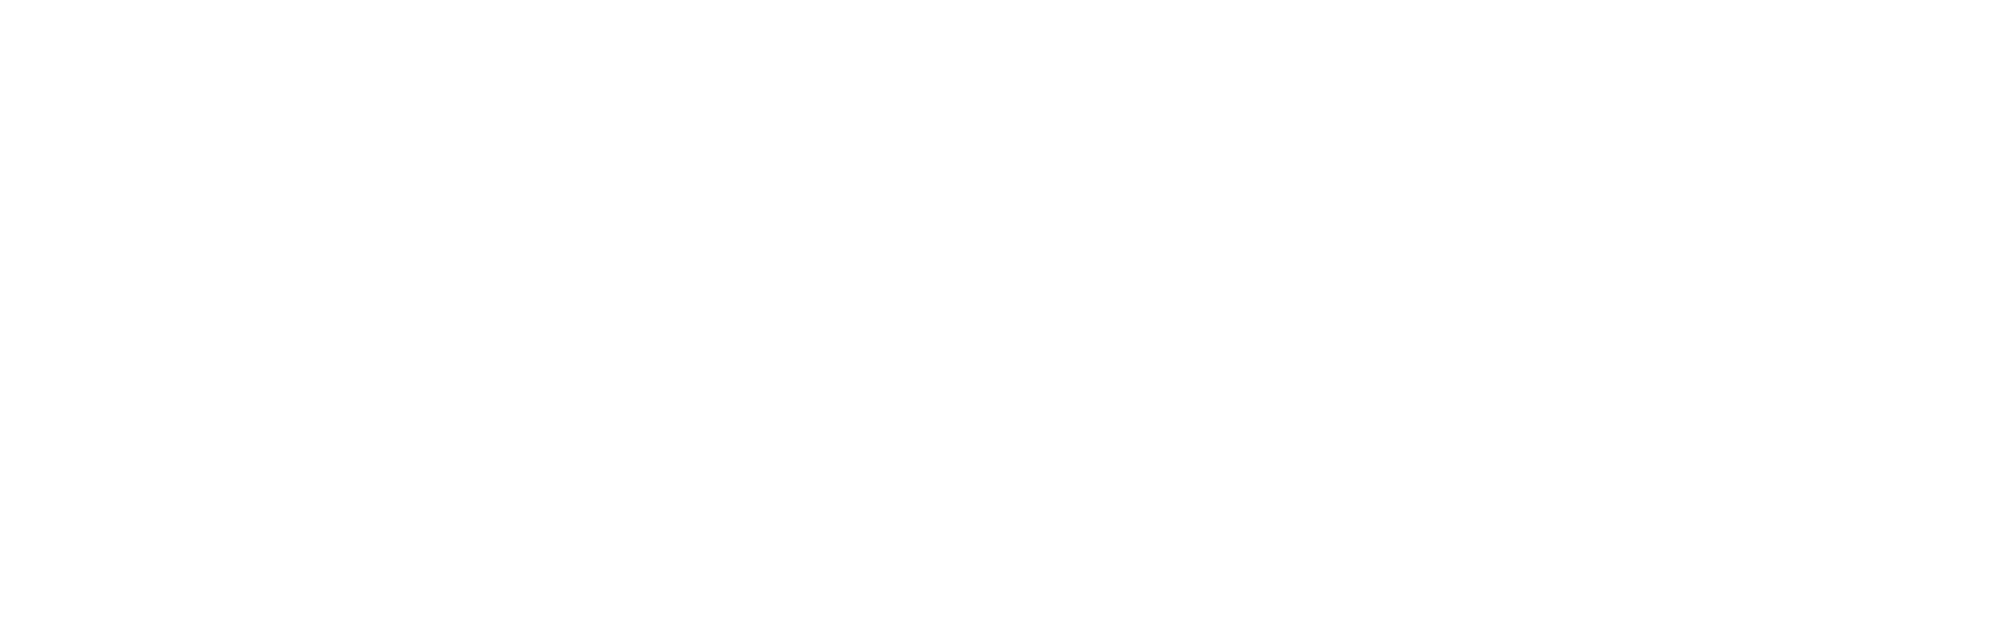 Kullanım Sözleşmesi - Leather harmonica - Premium handmade leather goods